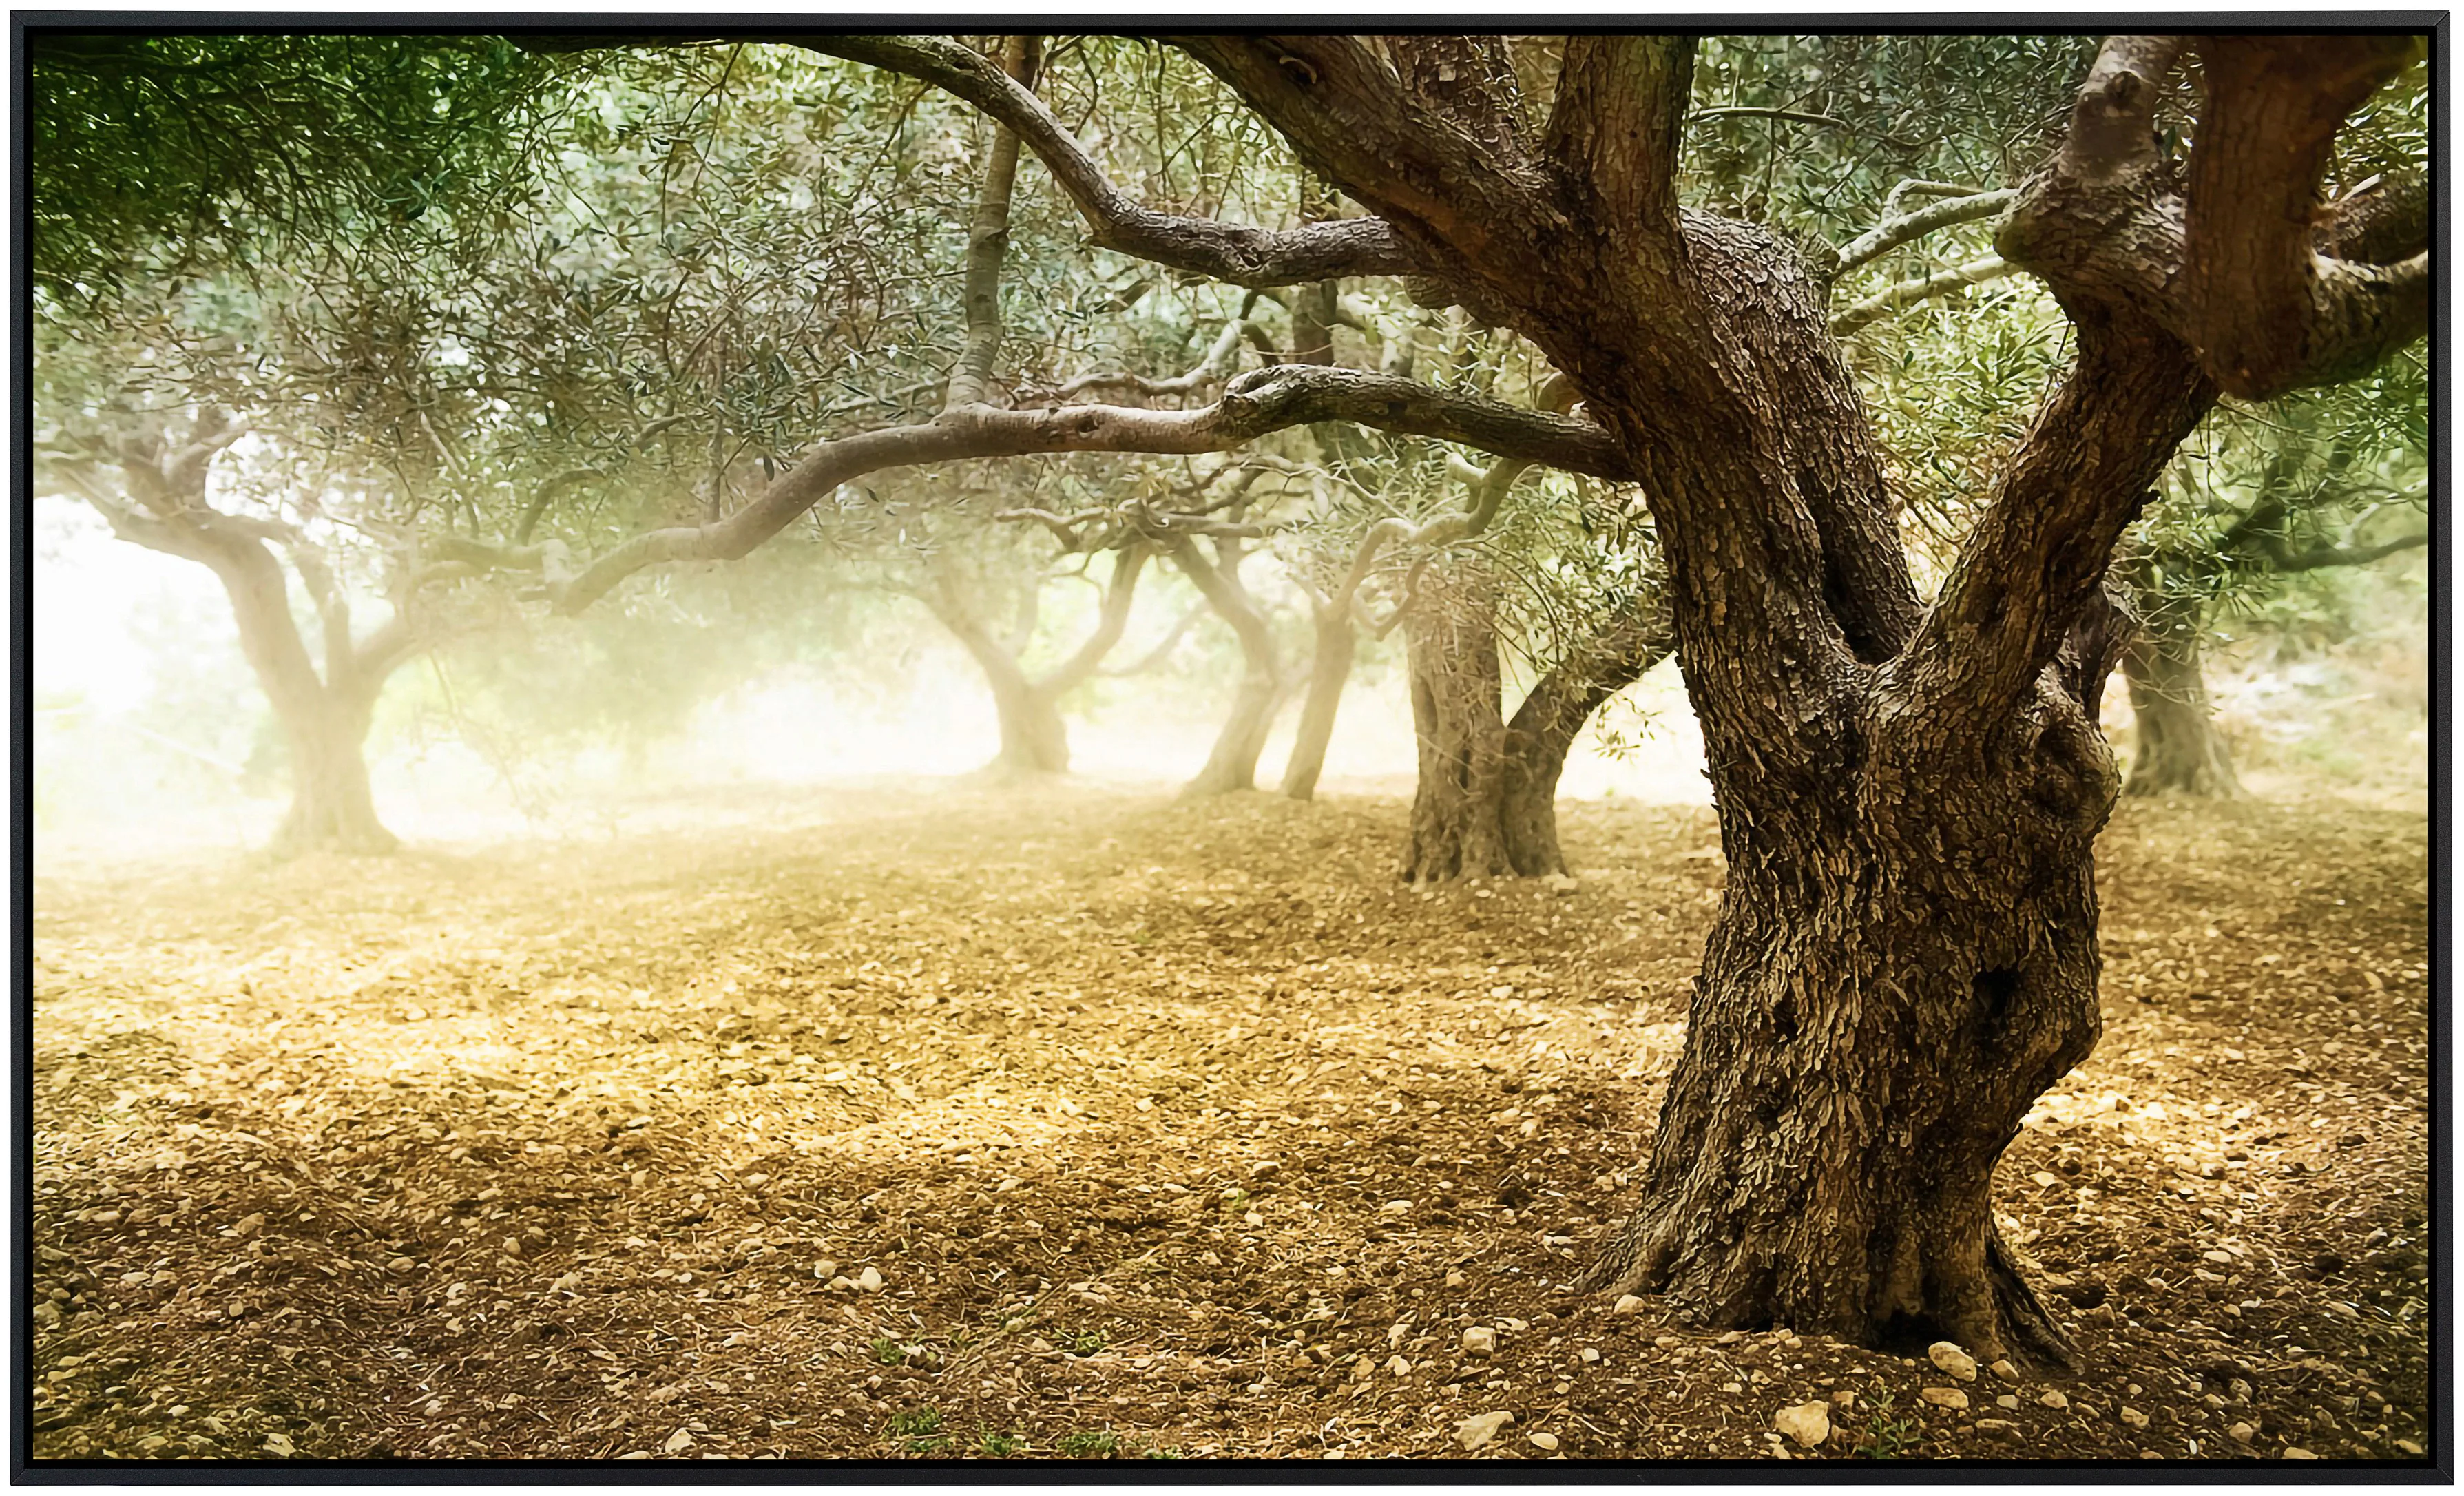 Papermoon Infrarotheizung »Alte Olivenbäume« günstig online kaufen